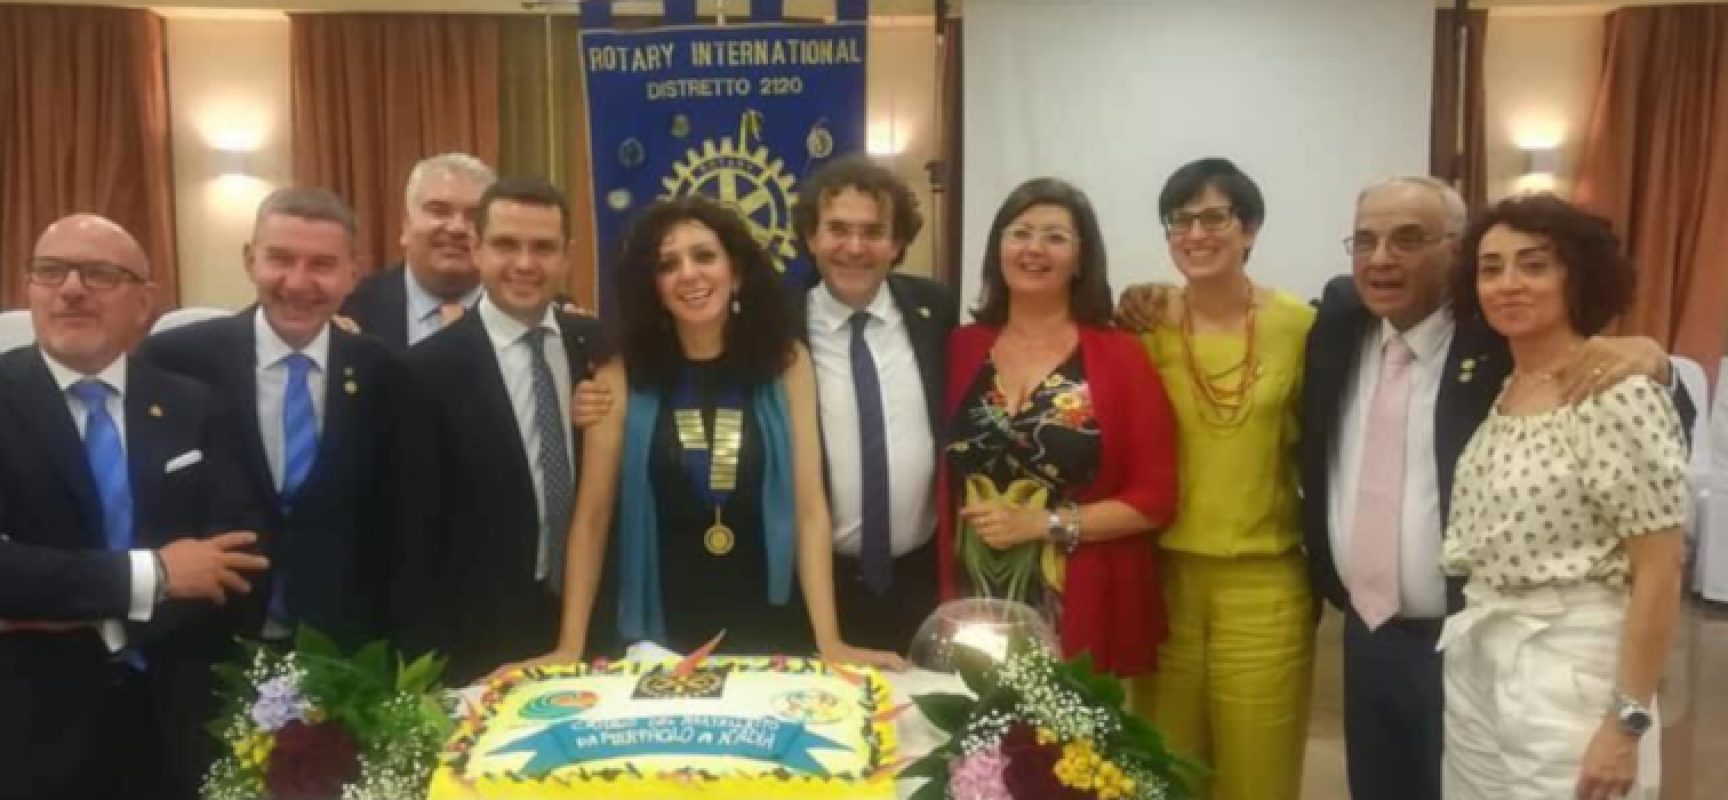 “Club dovrà spronare la comunità locale”, intervista a Nadia di Liddo, neo presidente Rotary